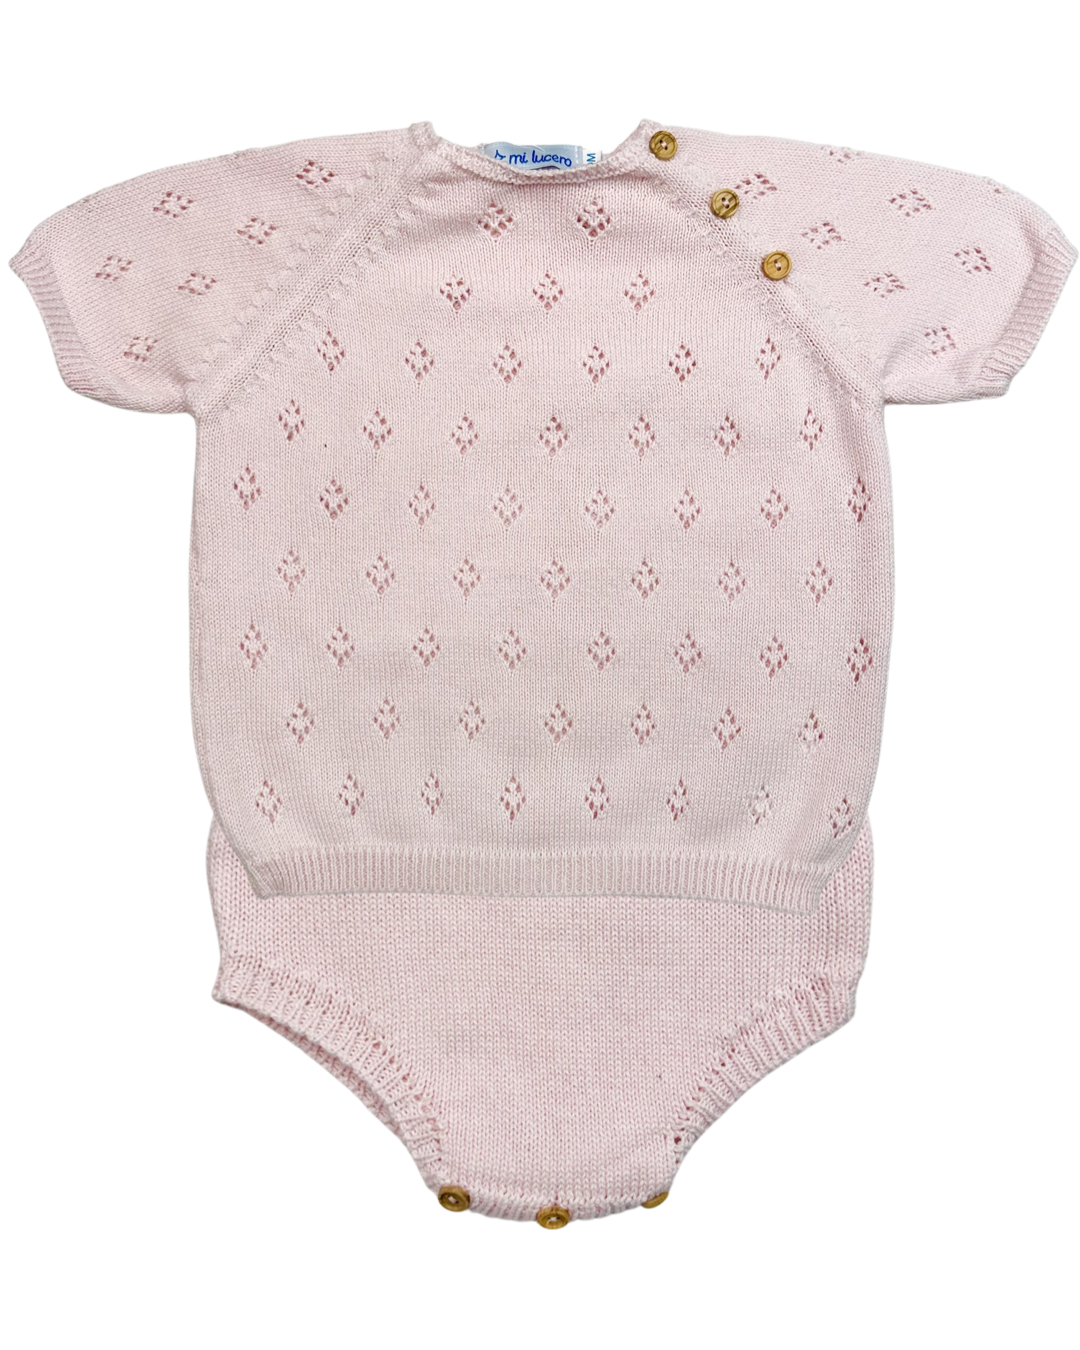 Eyelet Knit Diaper Set - Pink (24M)